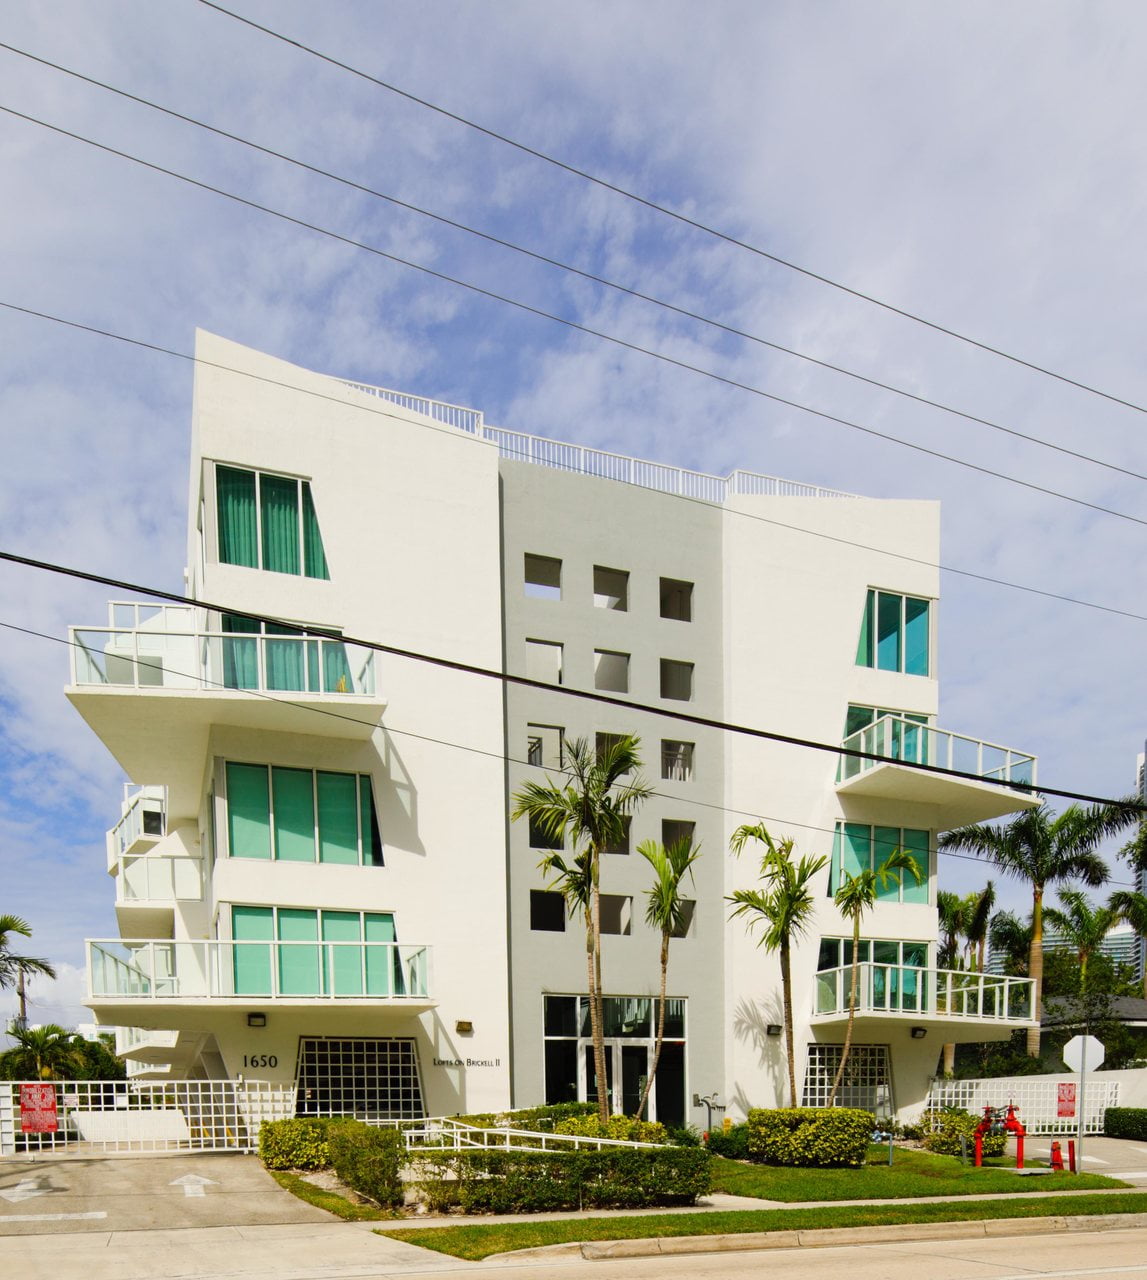 Miami – Lofts of Brickell II